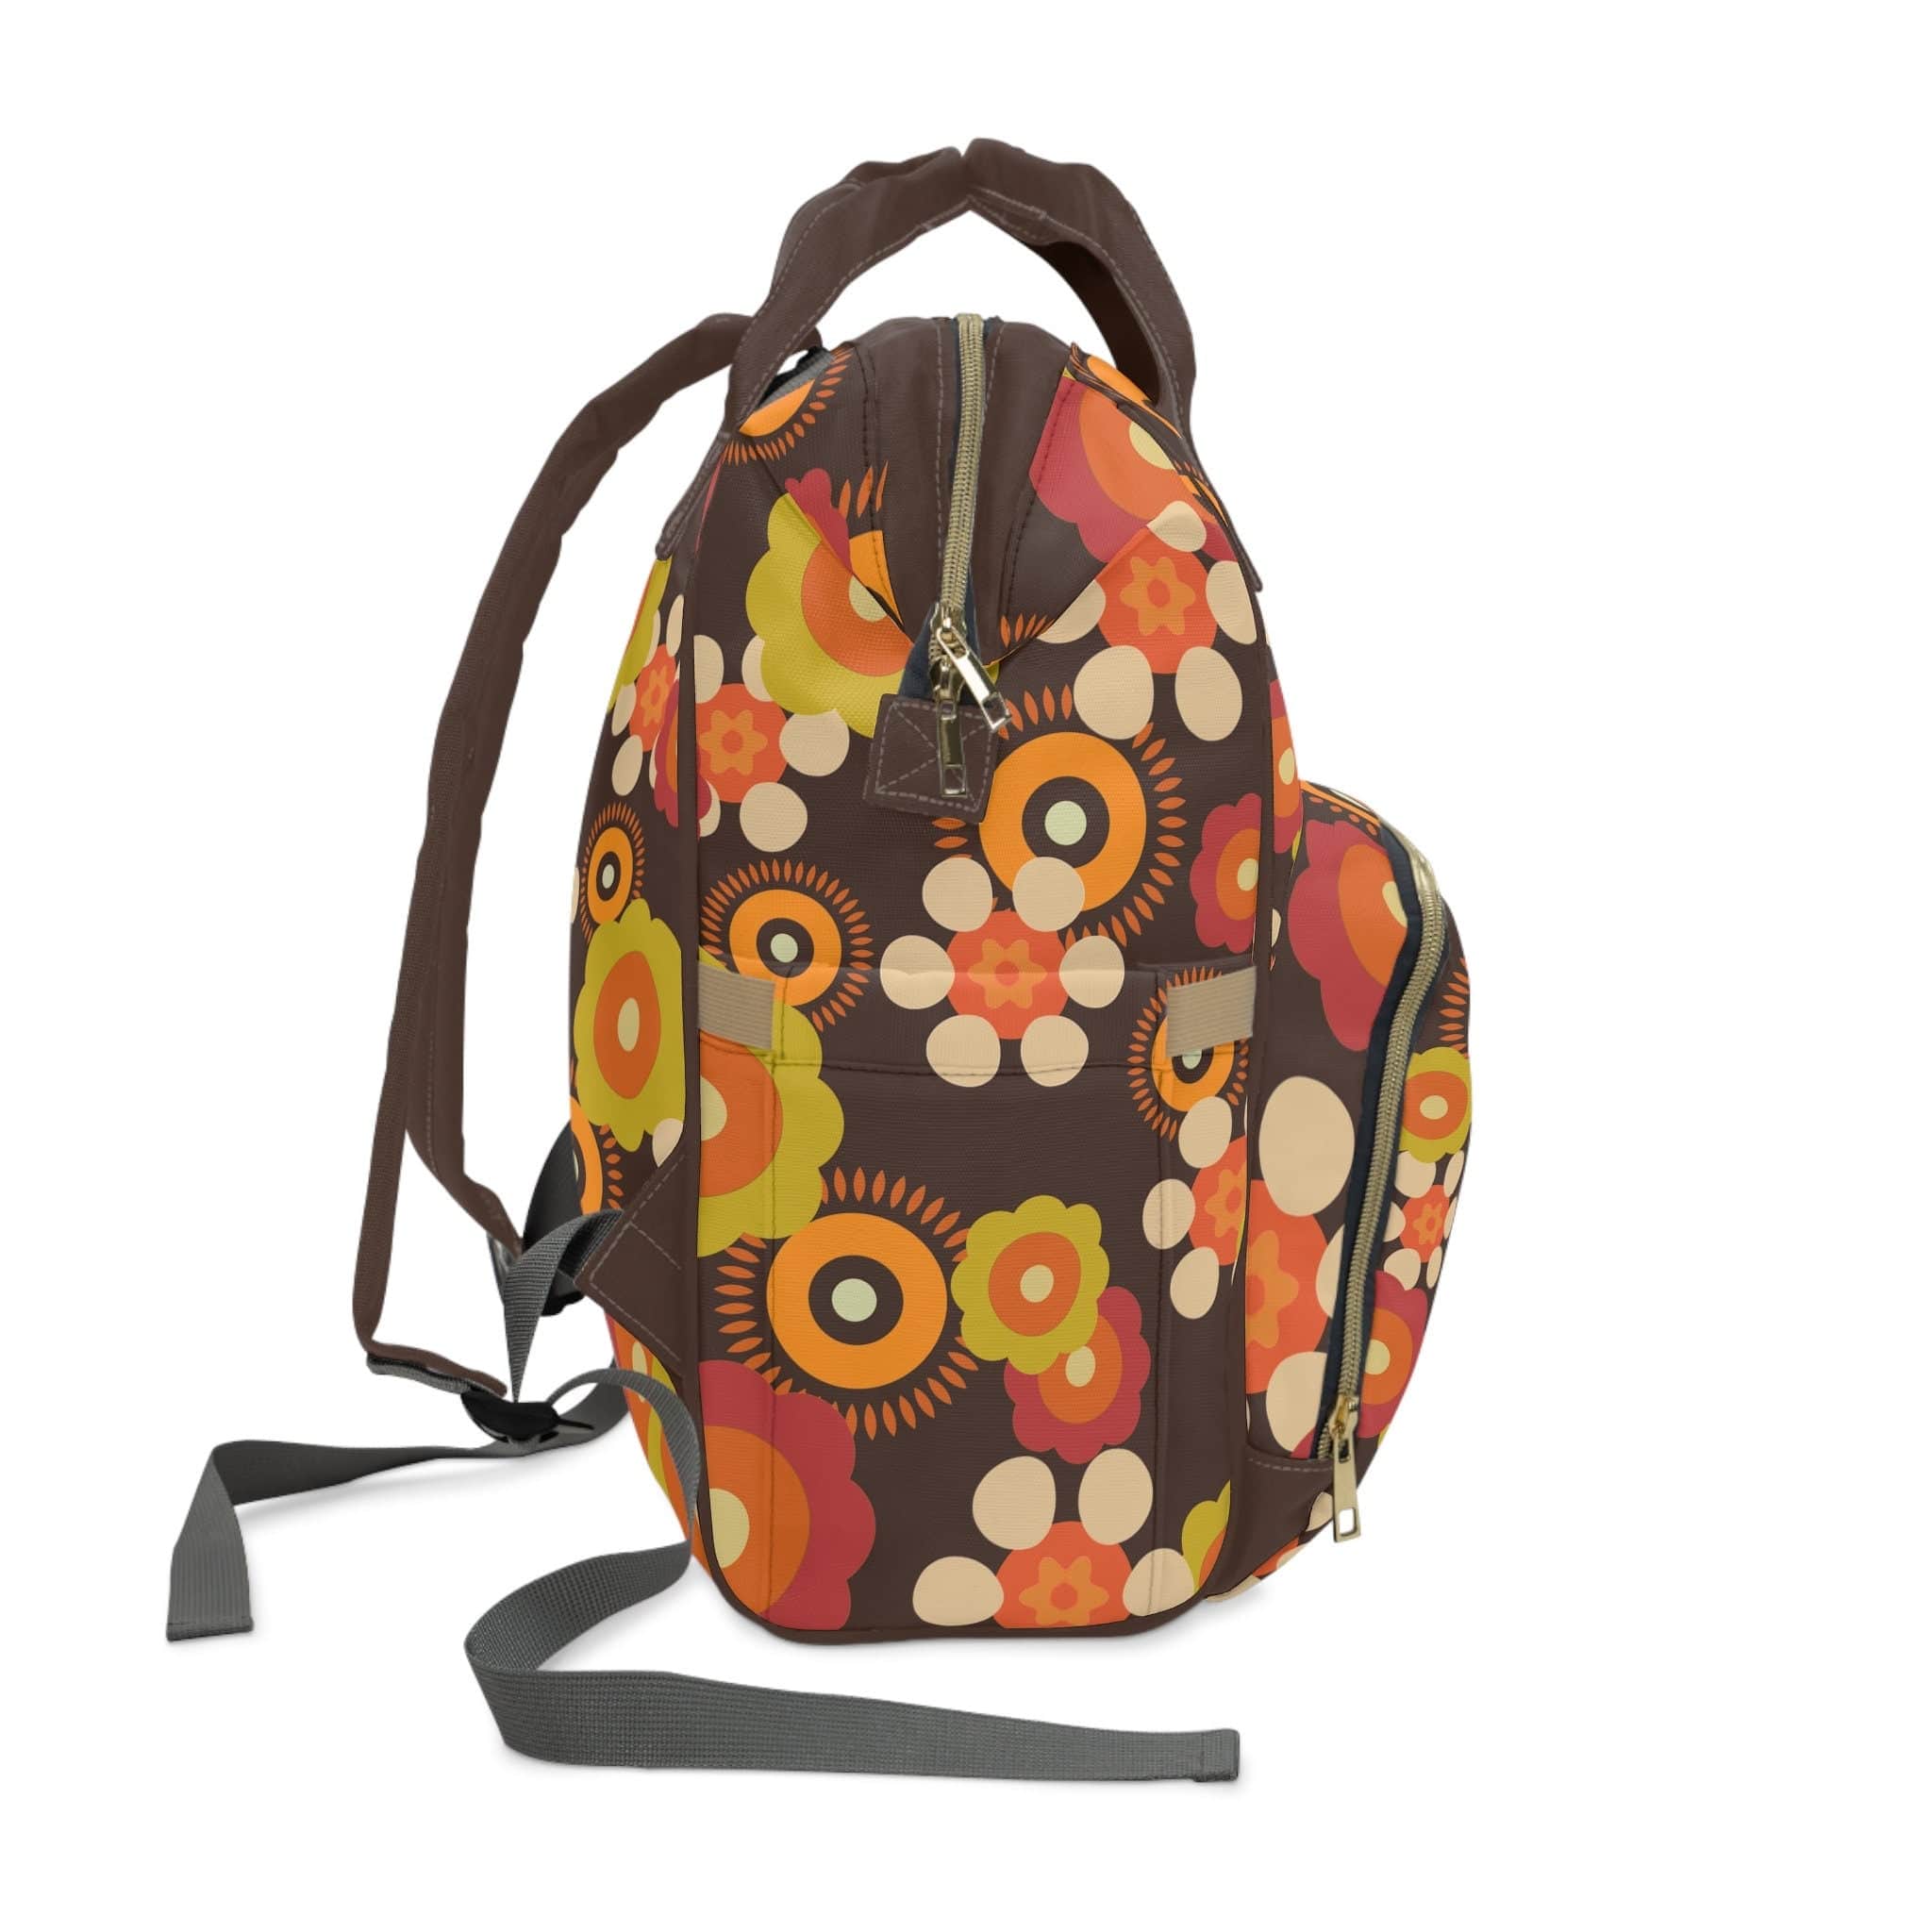 Kate McEnroe New York Retro Funky Groovy Hippie Boho Floral Multifunctional Backpack, Diaper Bag, Weekender Bag, Carry - on Luggage Bag, Multipurpose BackpackDiaper Bags25833989005466094590